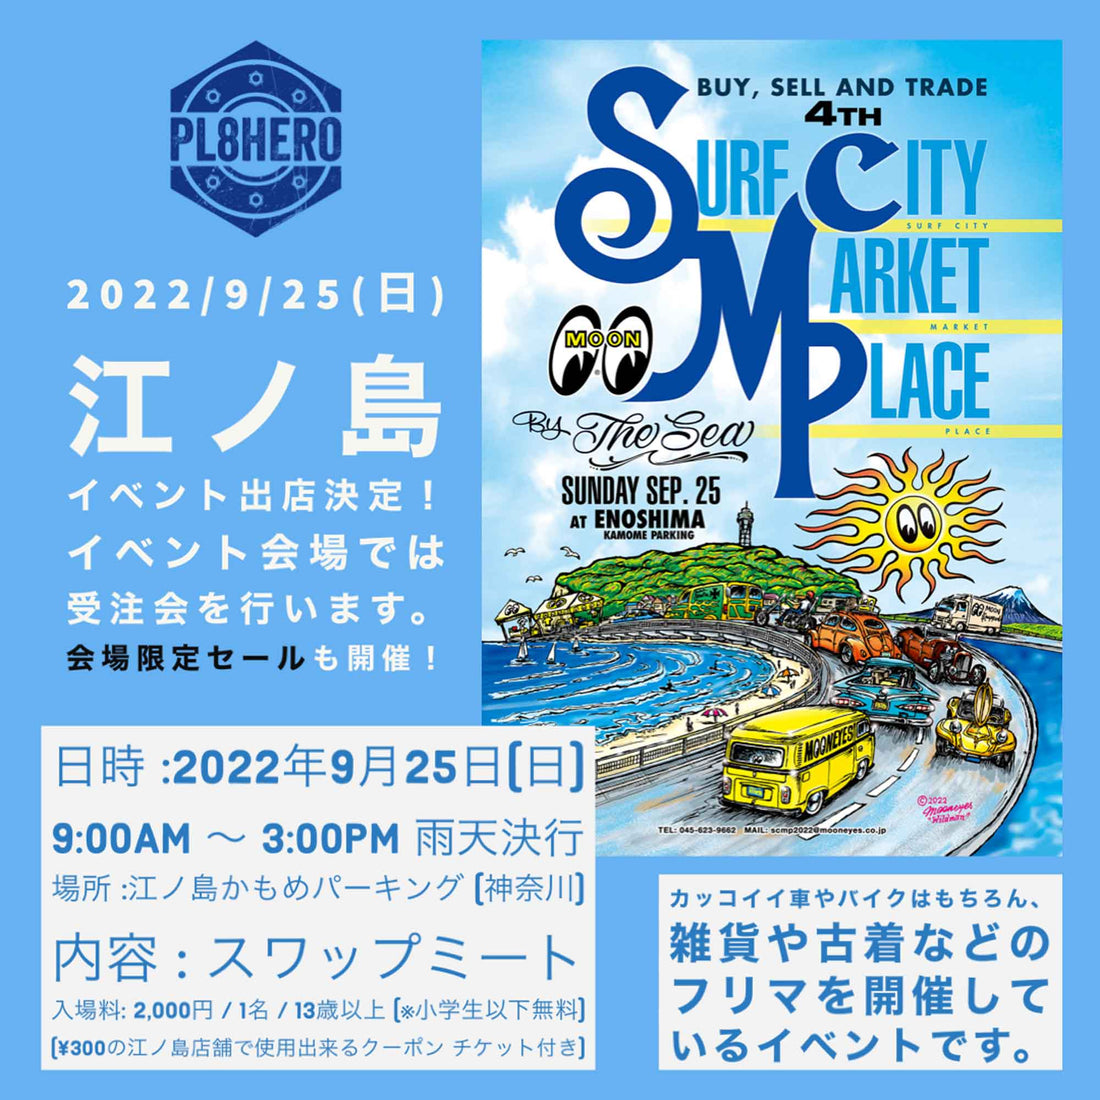 【イベント出店】2022/9/25(日)は、みんなで江ノ島に集まろう！ / Mooneyesさん主催 Surf City Market Place @ 江ノ島